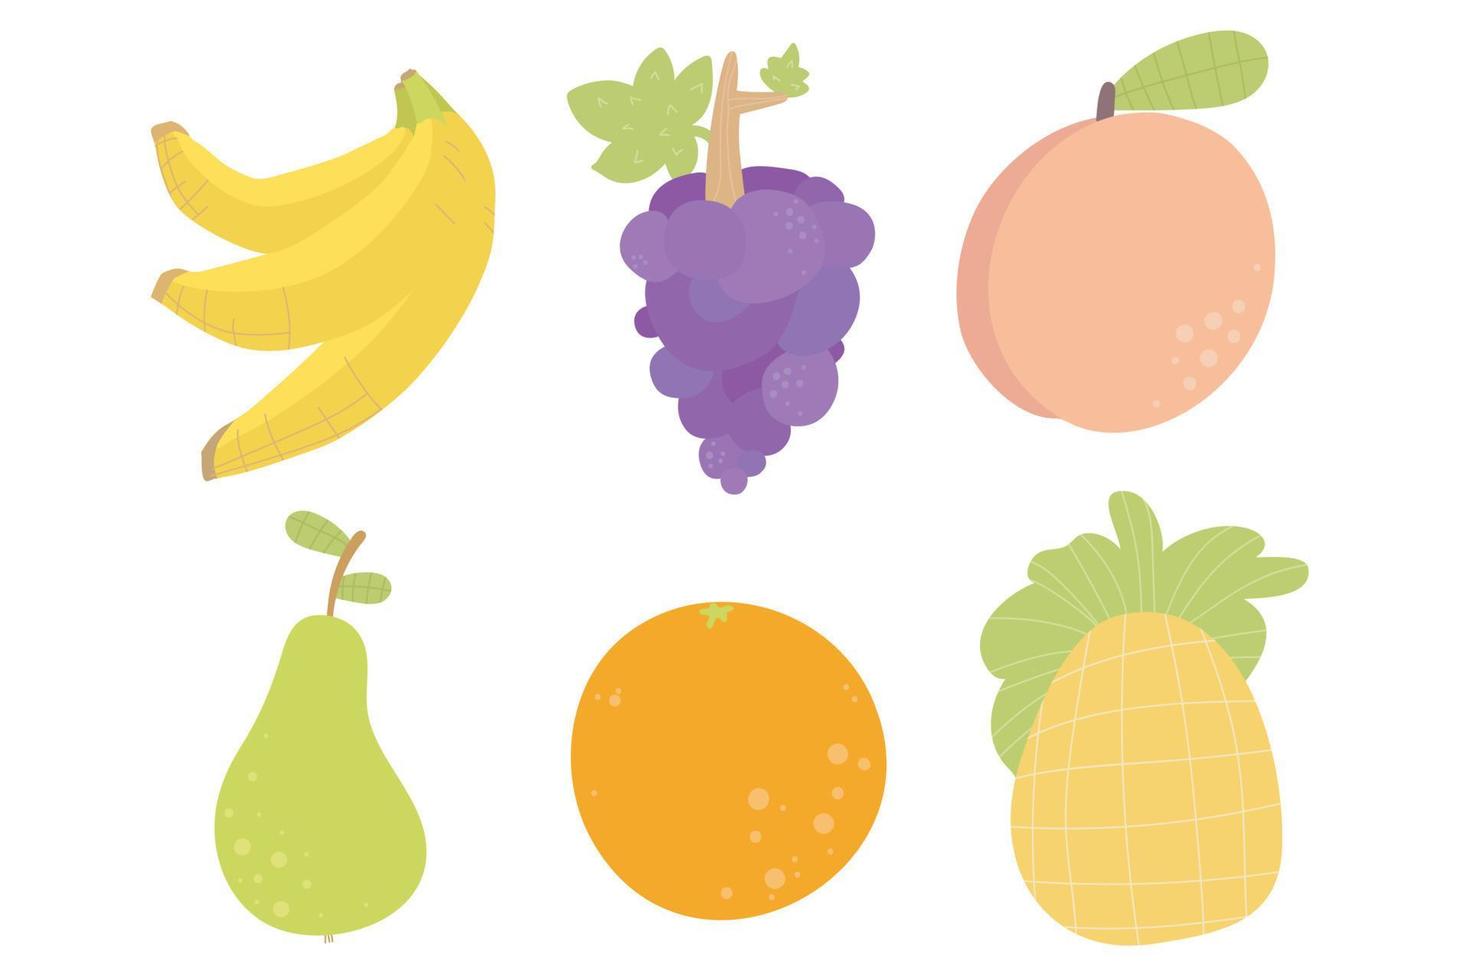 piña, plátano, piña, naranja, melocotón, pera. colección de dibujos animados de frutas divertidas vector